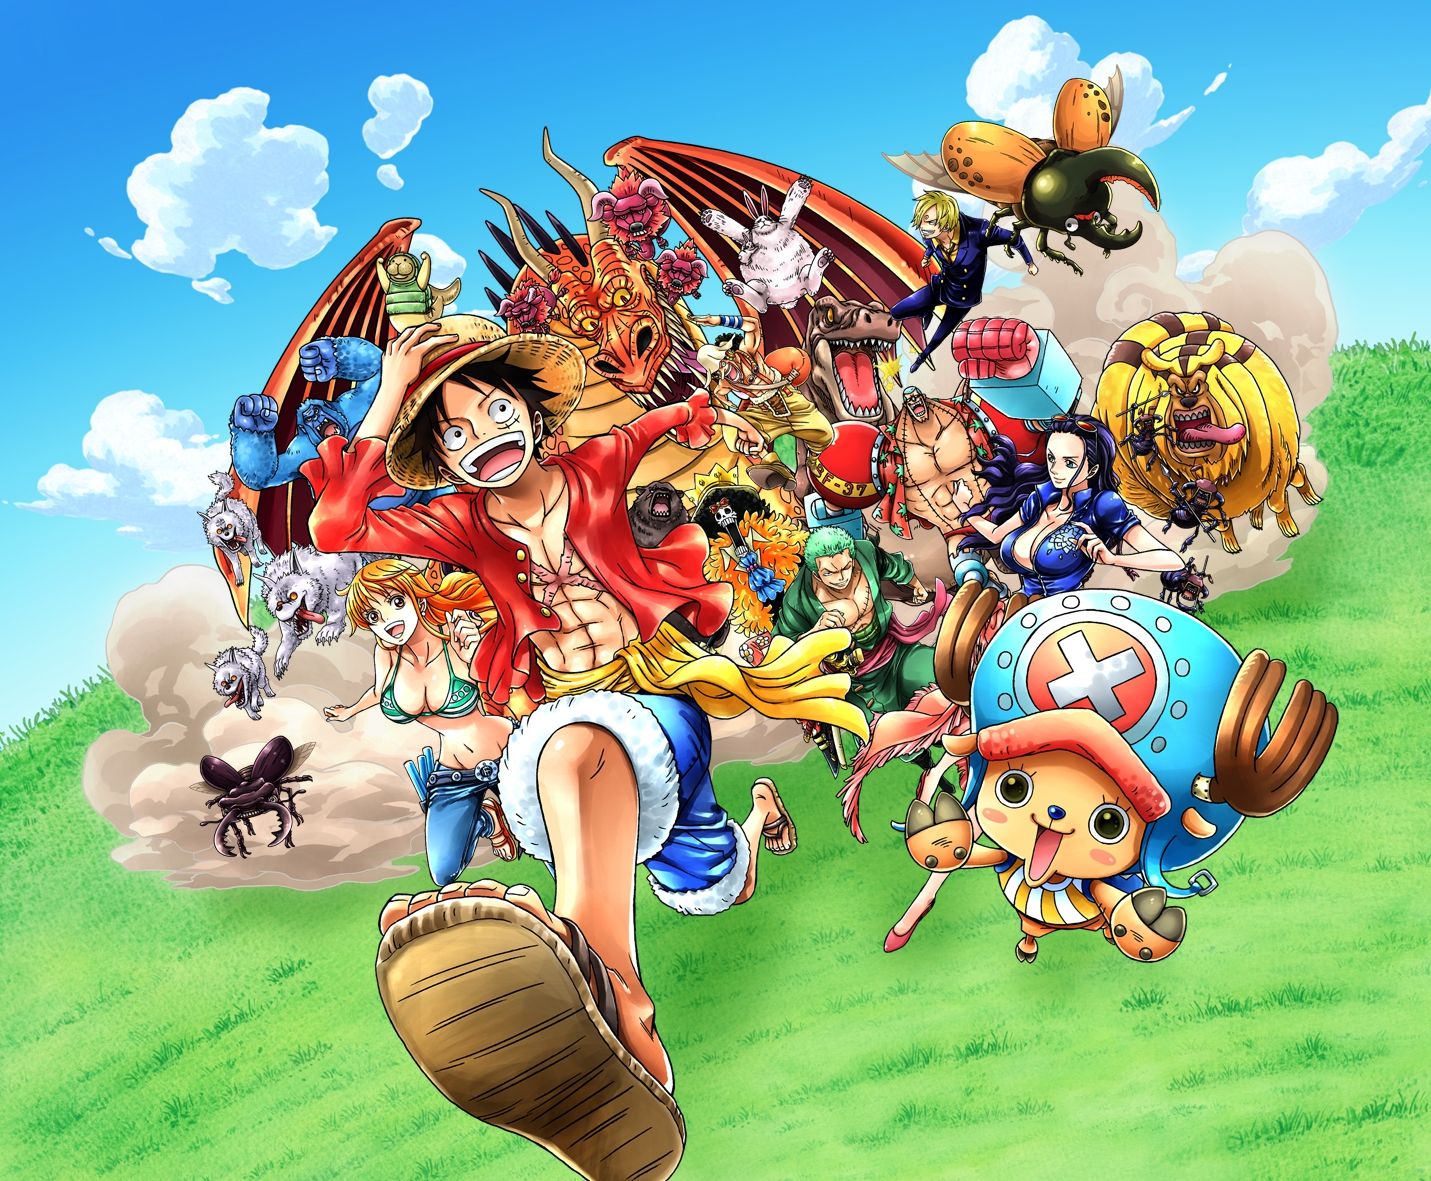 Arriva la deluxe edition di One Piece: Unlimited World Red